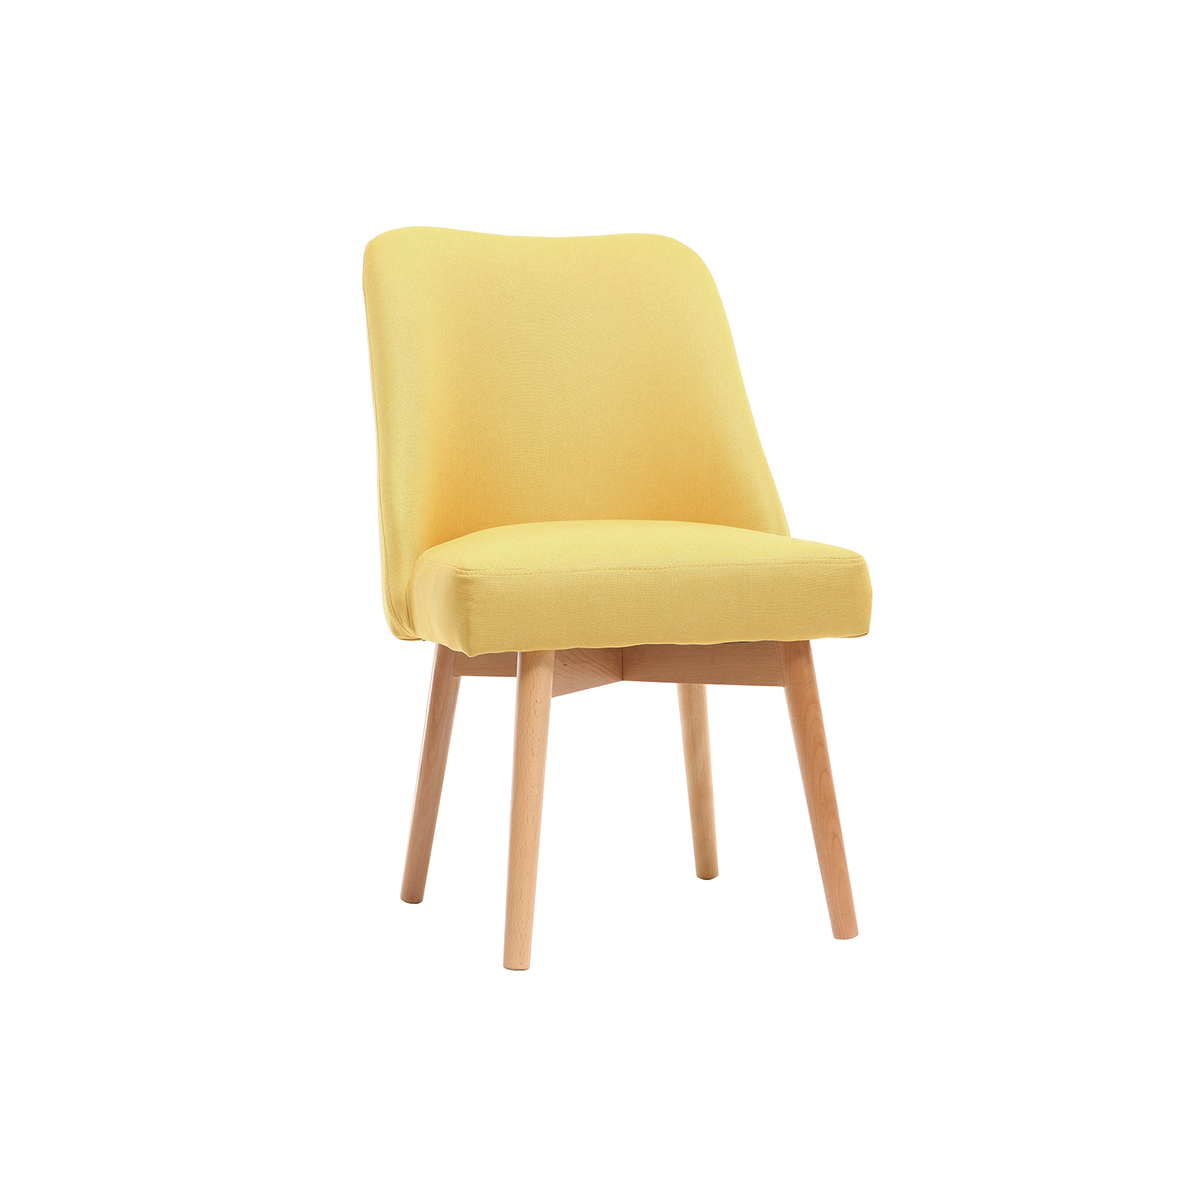 Chaise scandinave en tissu jaune et bois clair LIV vue1